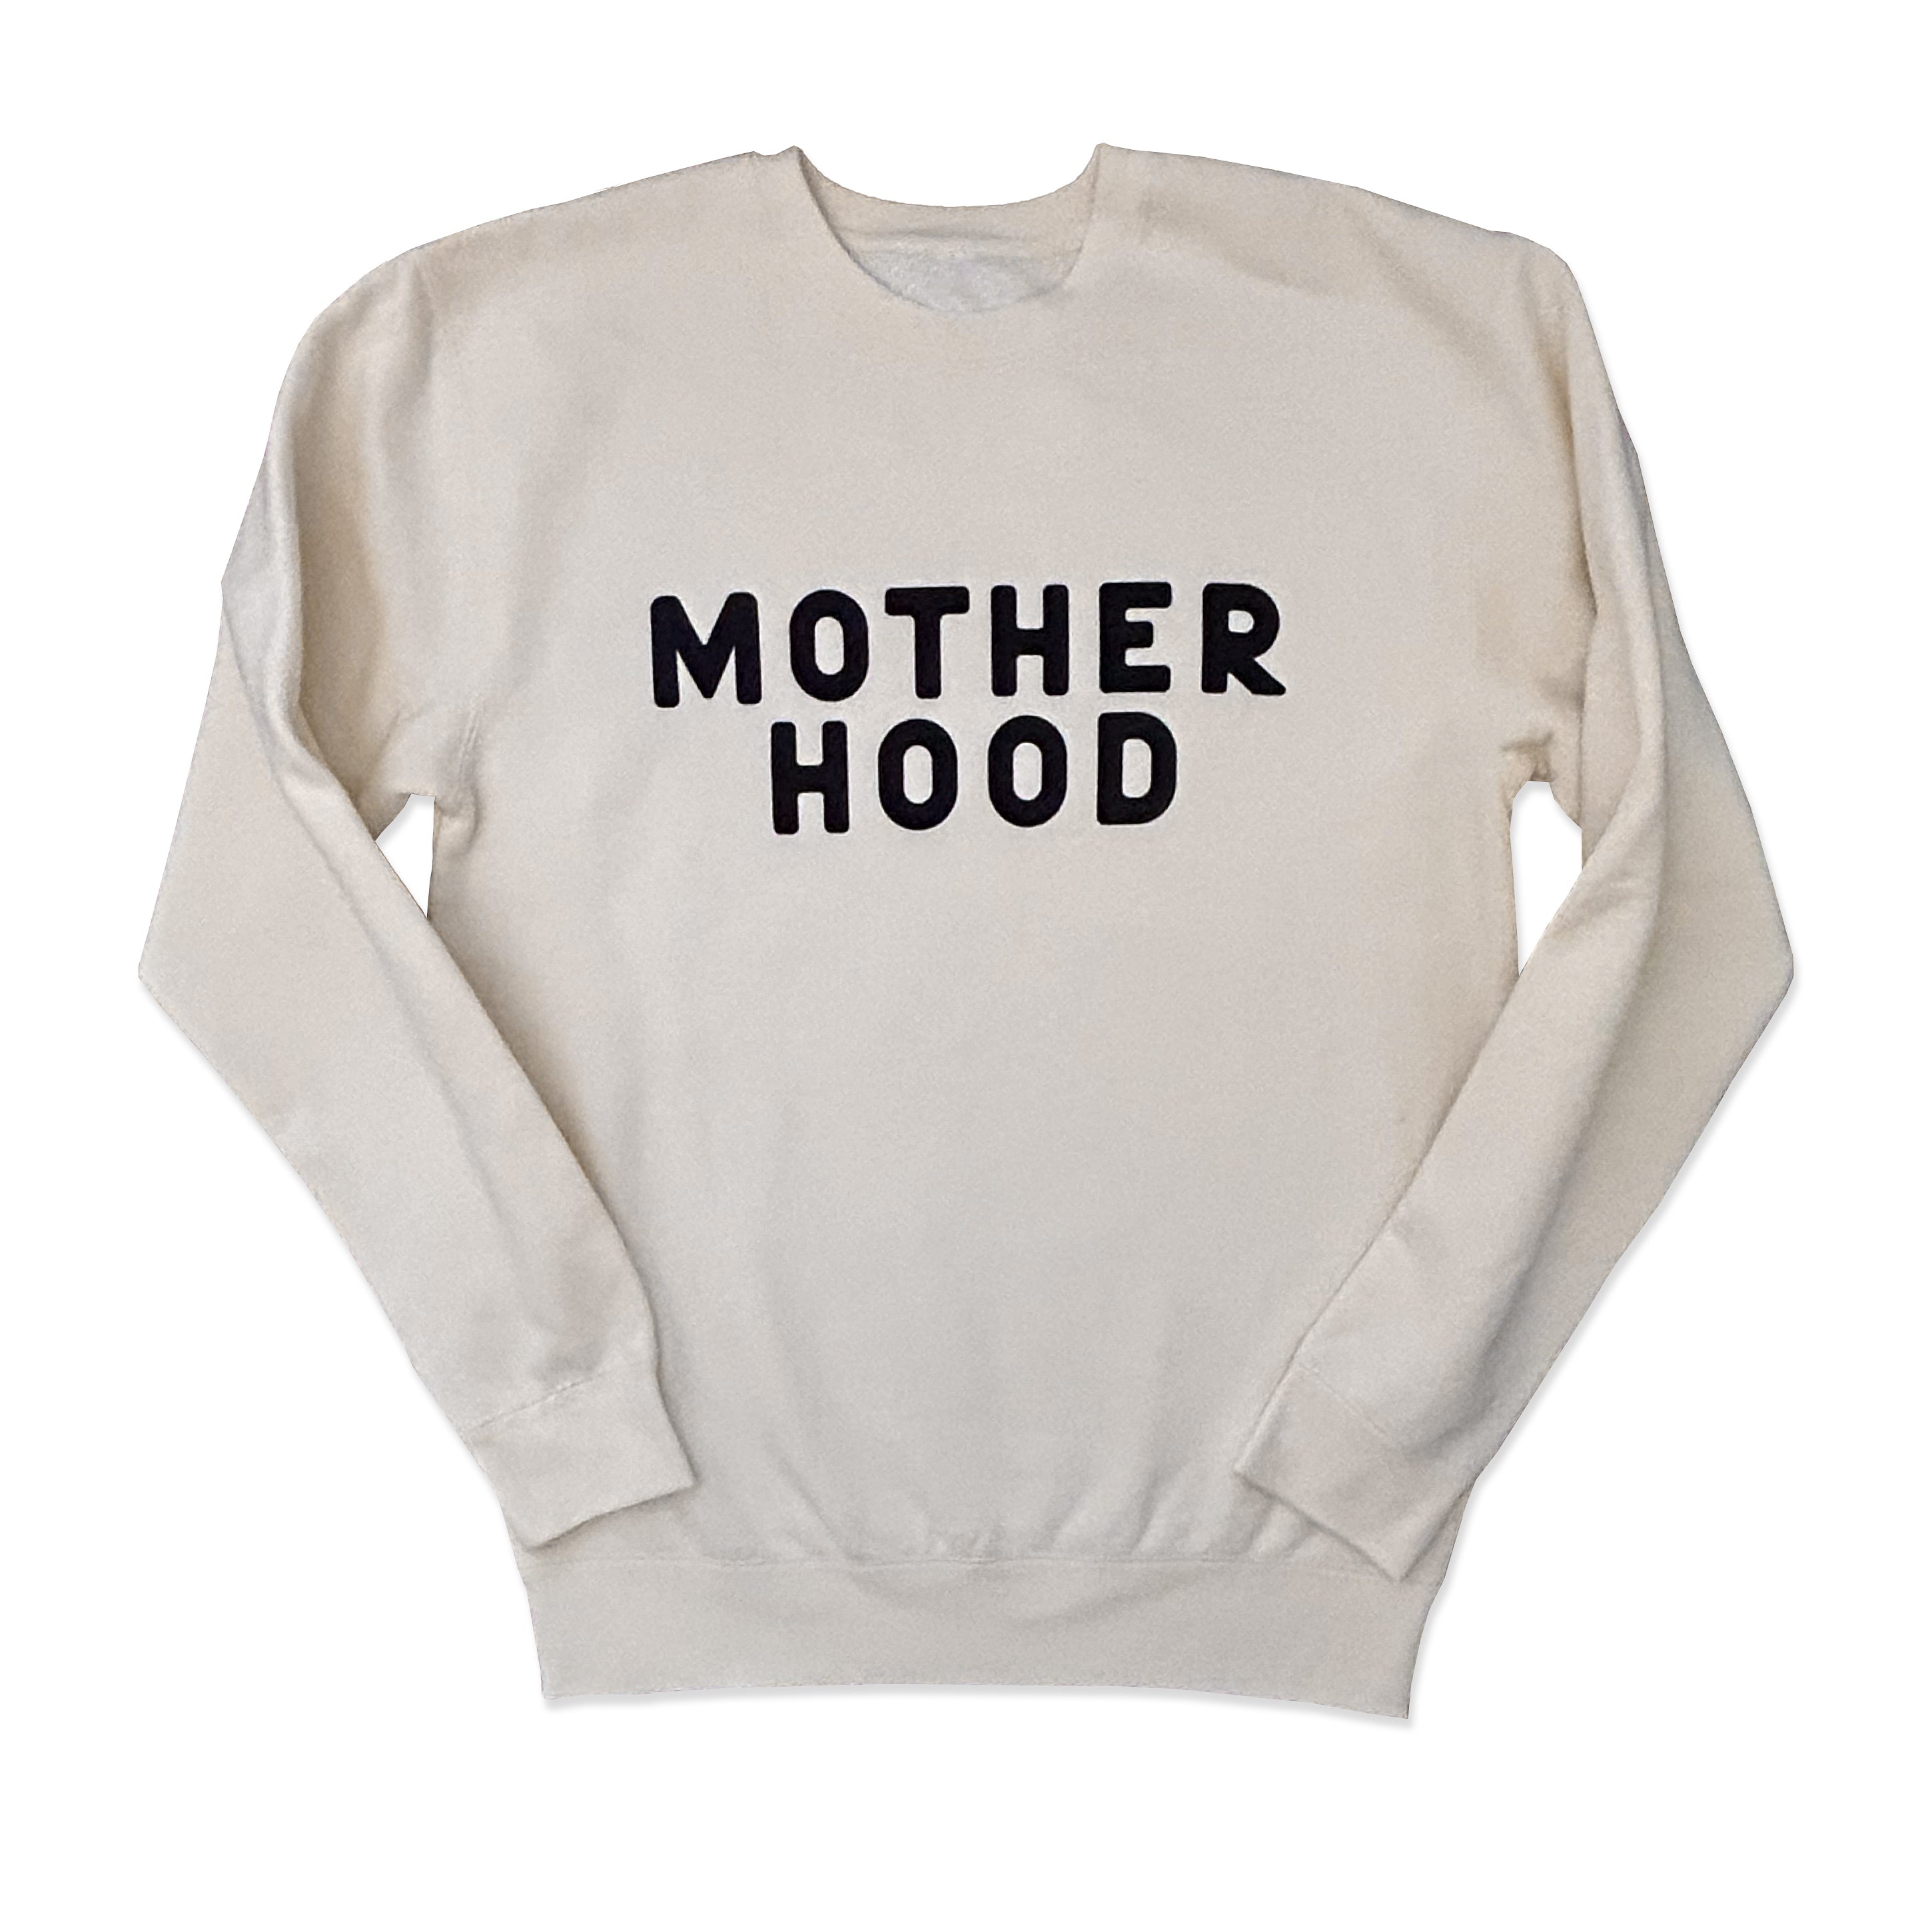 Motherhood sweatshirt